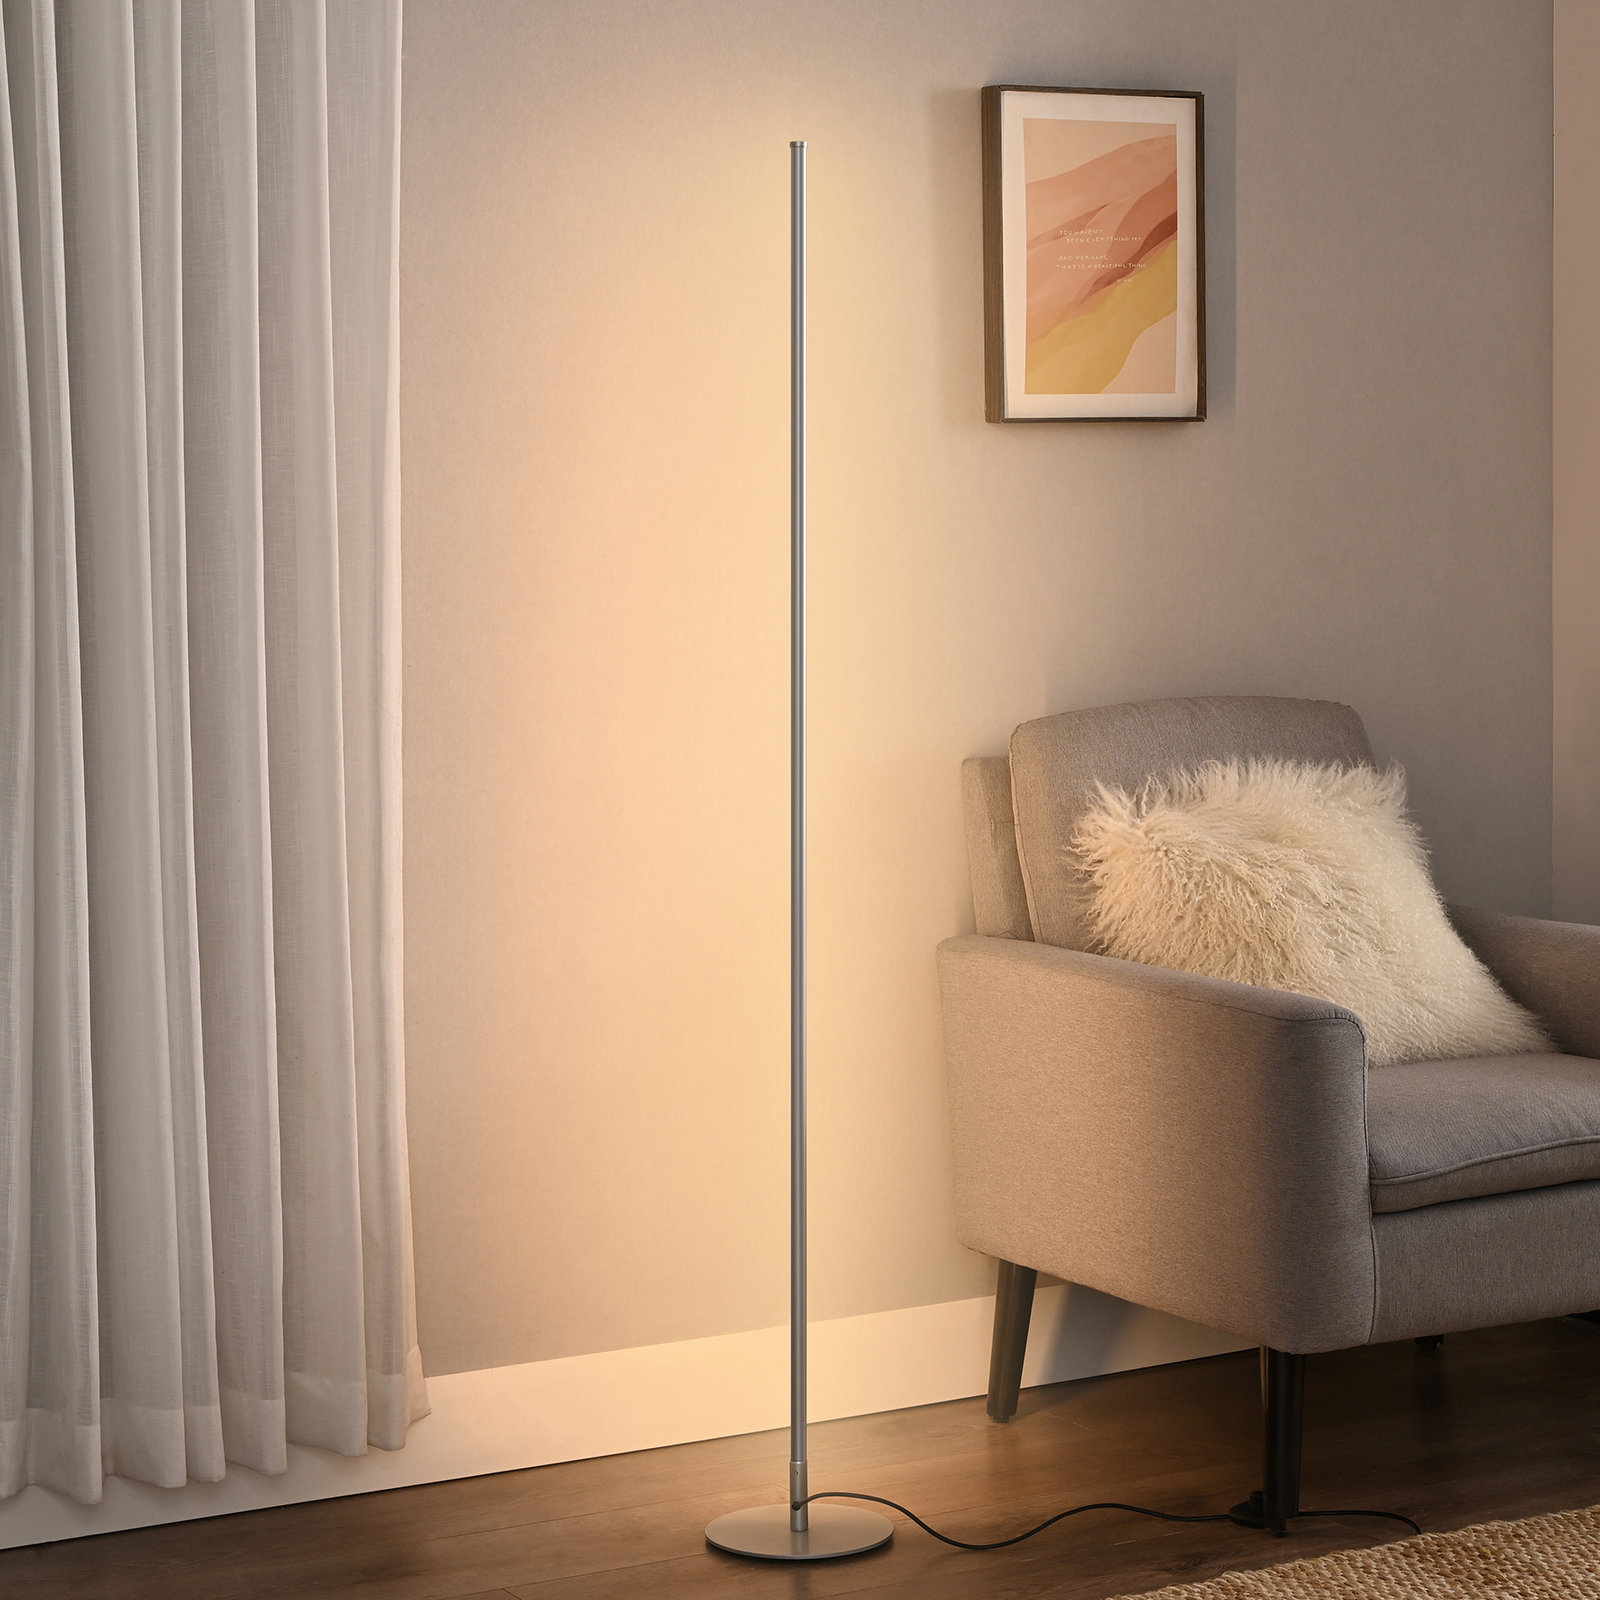 Corner Floor Lamp, Minimalist LED Light Warm Standing Floor